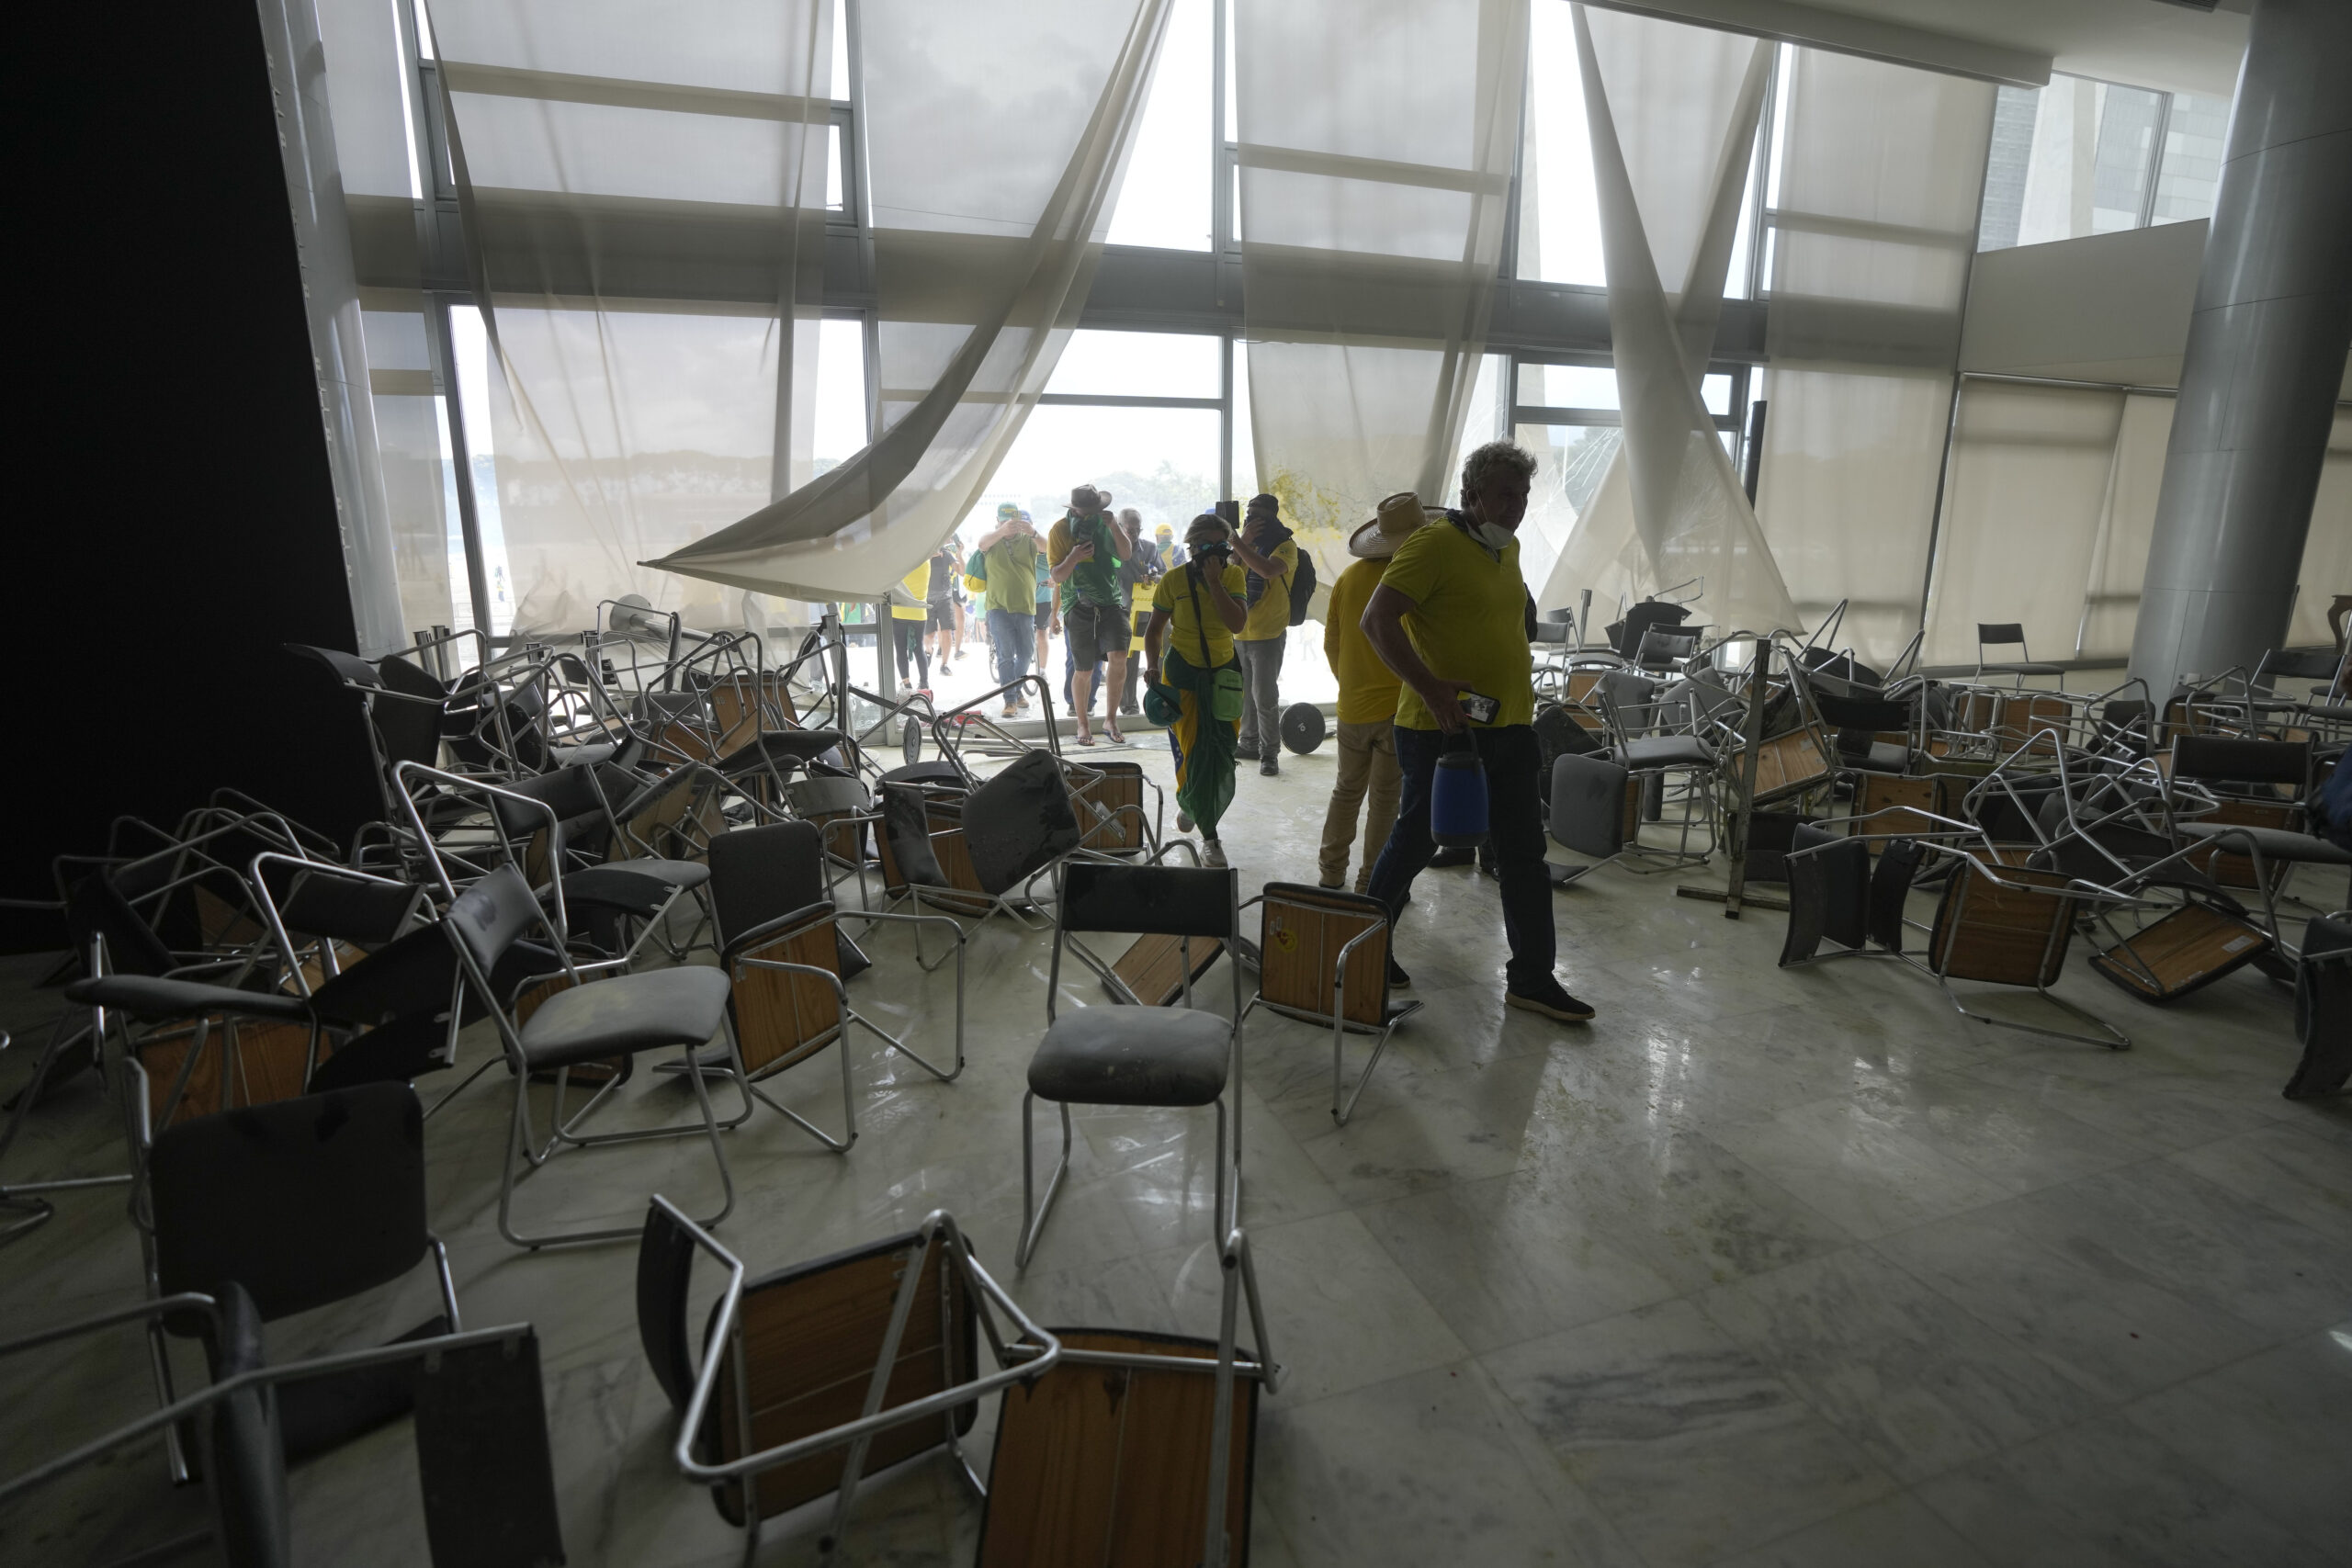 Anhänger des ehemaligen brasilianischen Präsidenten Bolsonaro stürmen das Gebäude des Nationalkongresses.